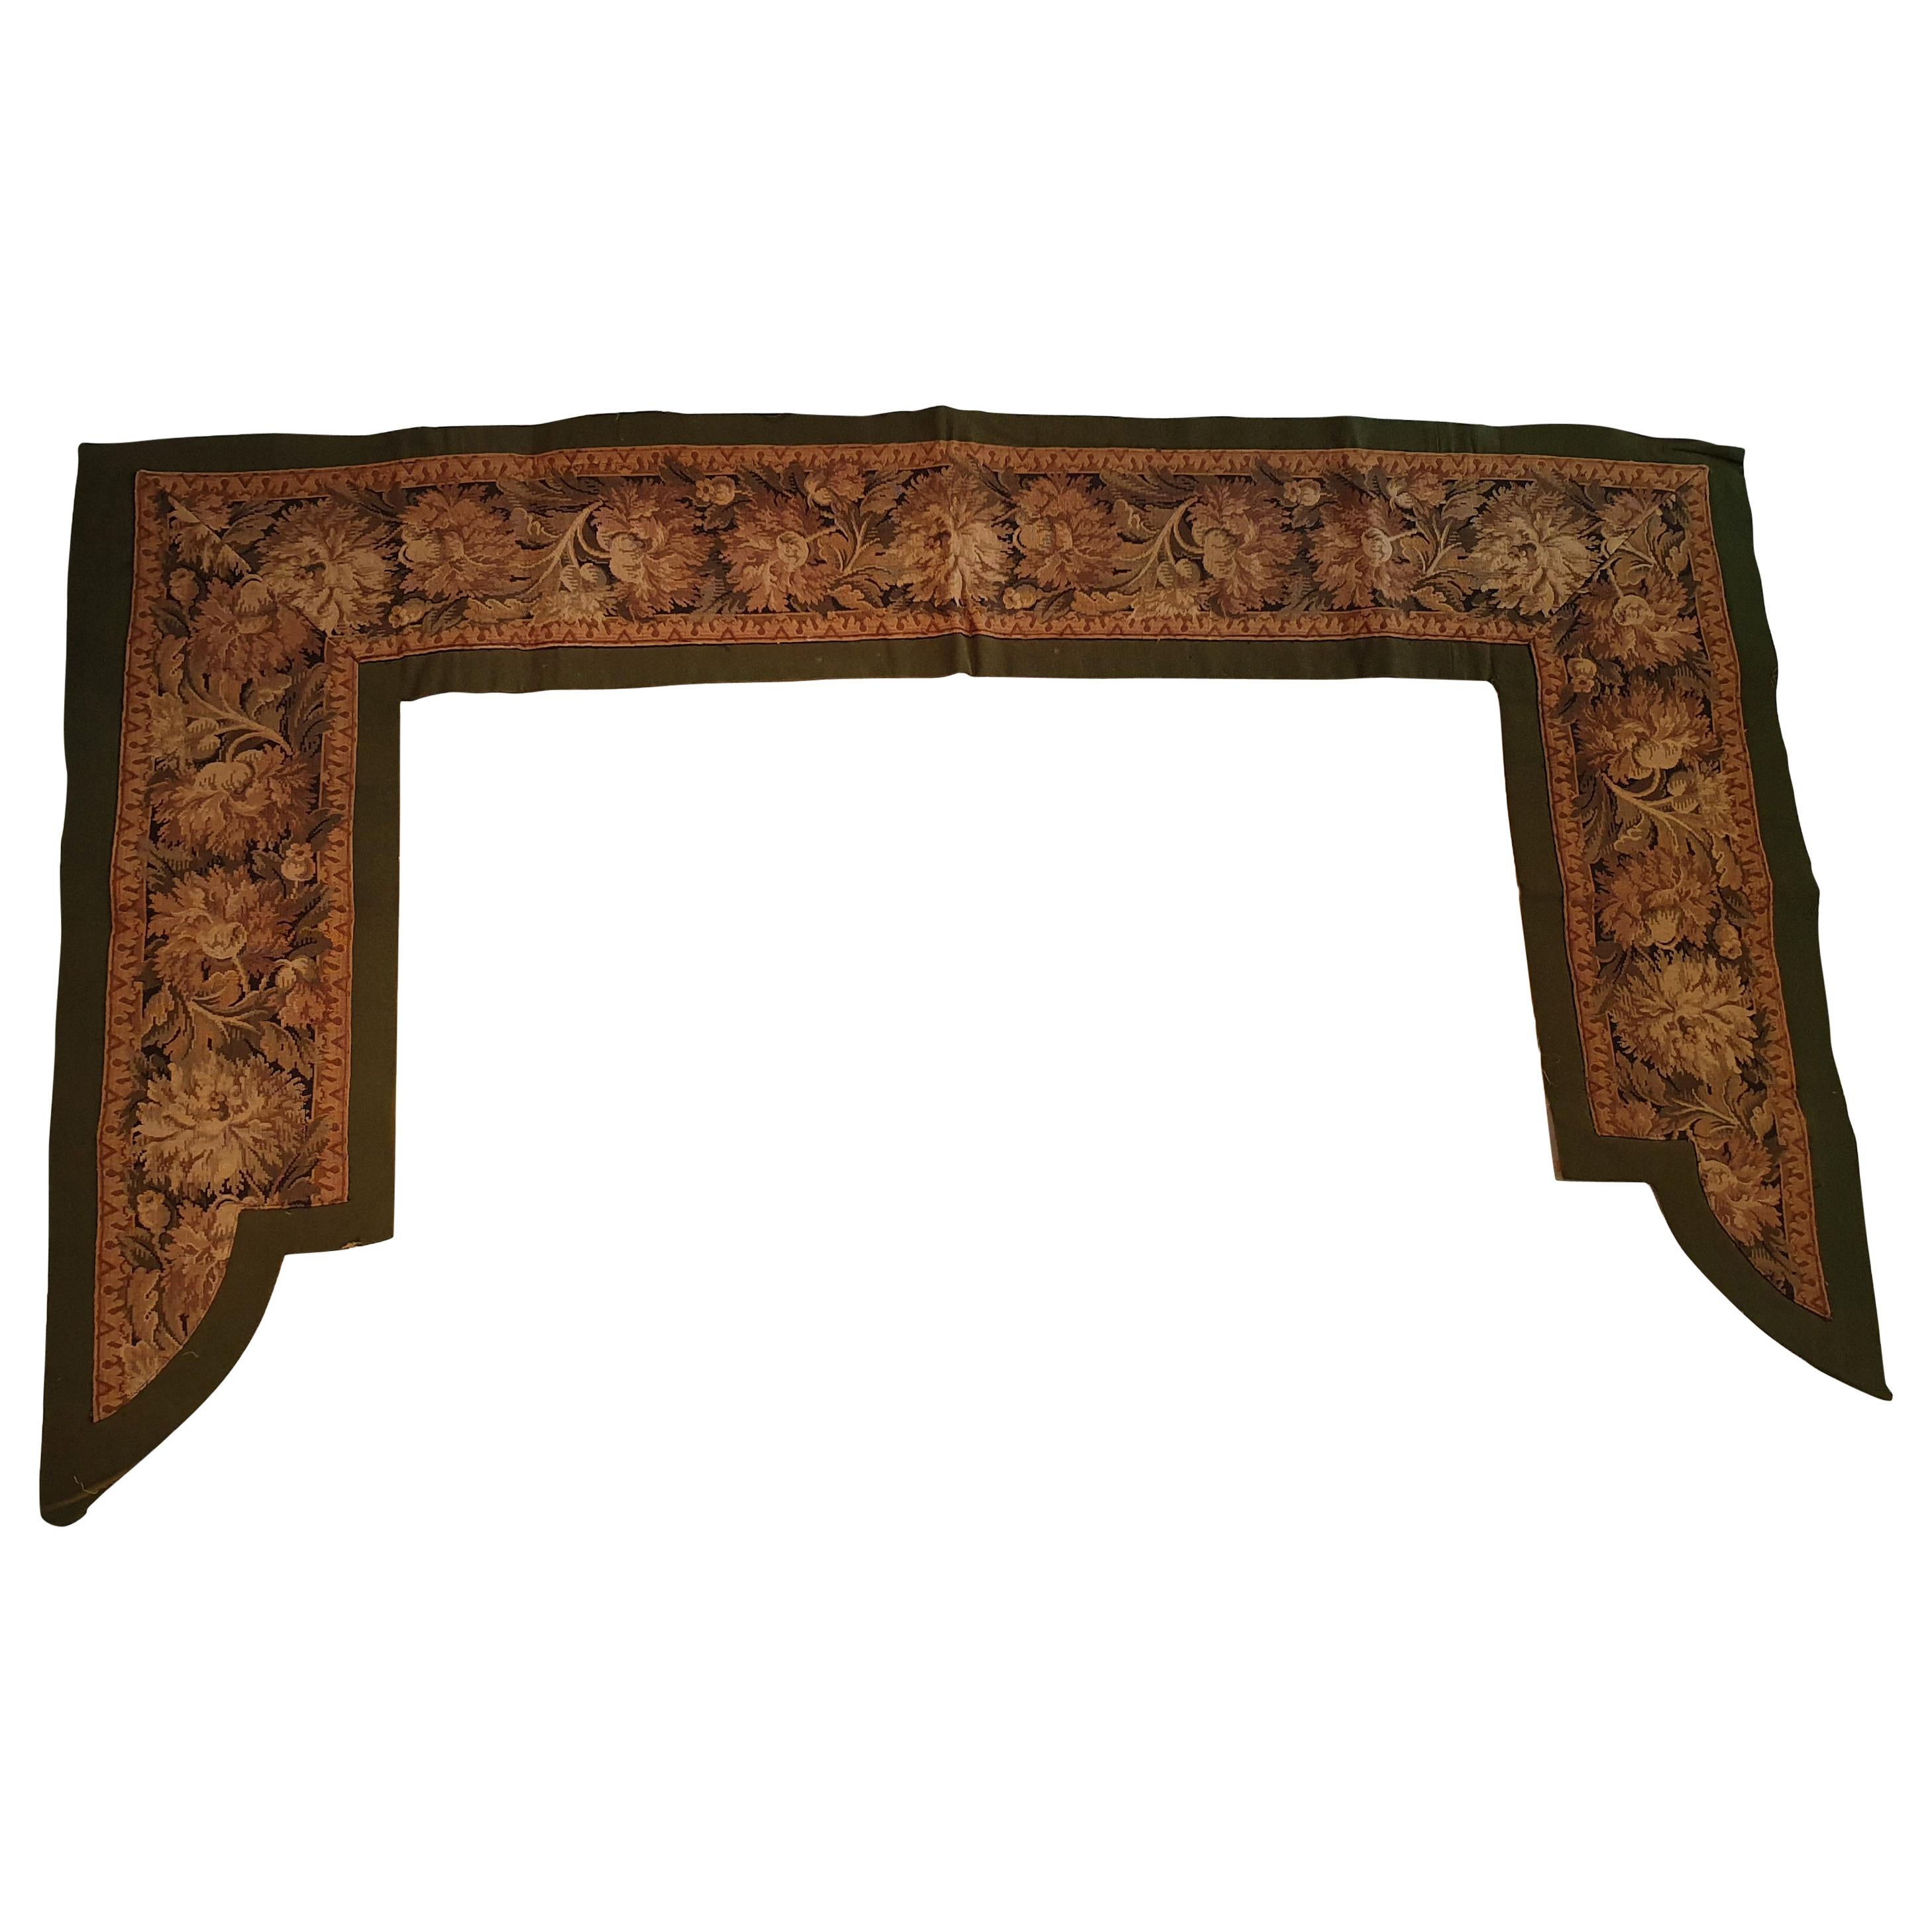 826 - 19th Century Tapestry Door